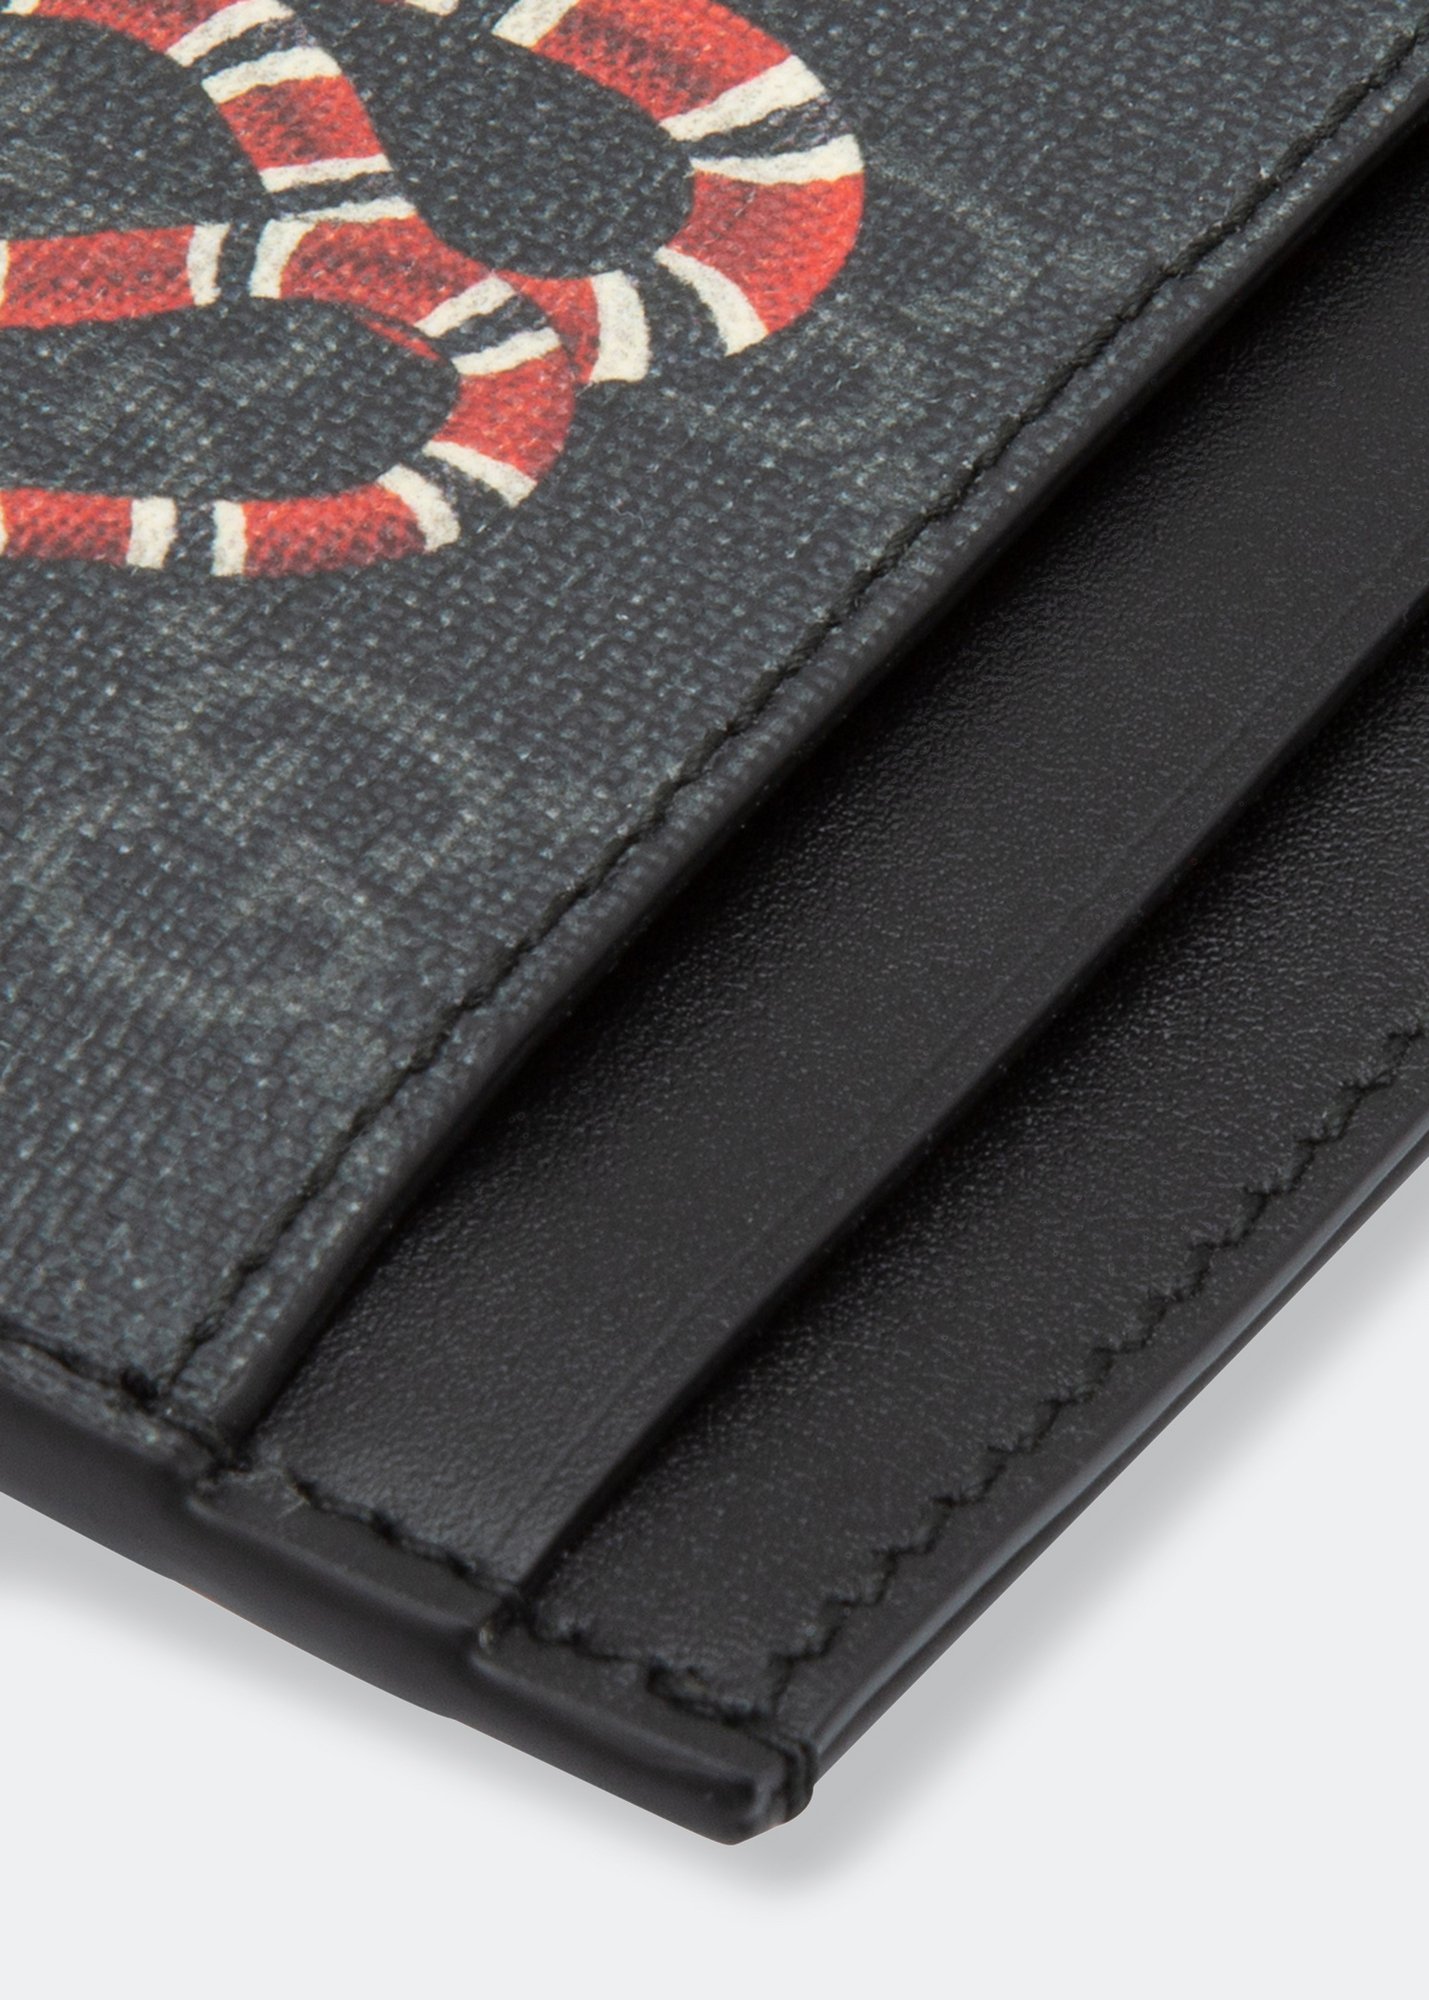 Gucci GG Supreme Snake-print Leather Cardholder for Men